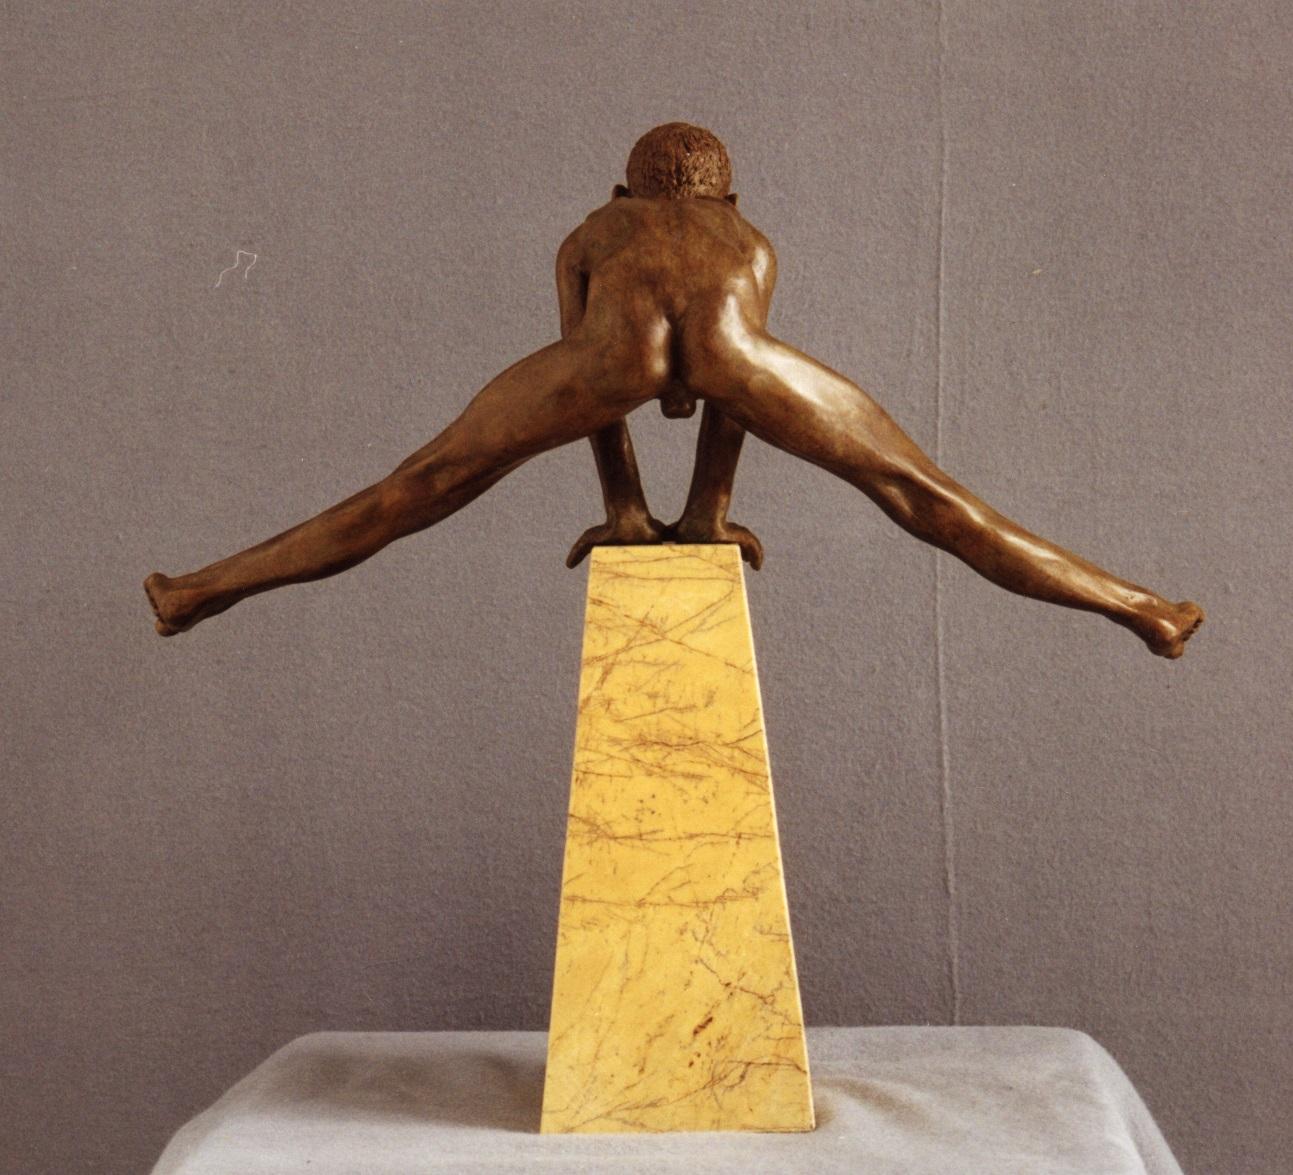 Ausum Bronze Zeitgenössische Skulptur Marmor Stein Nude Boy Männliche Figur

Wim van der Kant (1949, Kampen) ist ein autodidaktischer Künstler. Neben seinem ausgefüllten Beruf als Lehrer an einem Gymnasium übt er intensiv seinen Beruf als Bildhauer